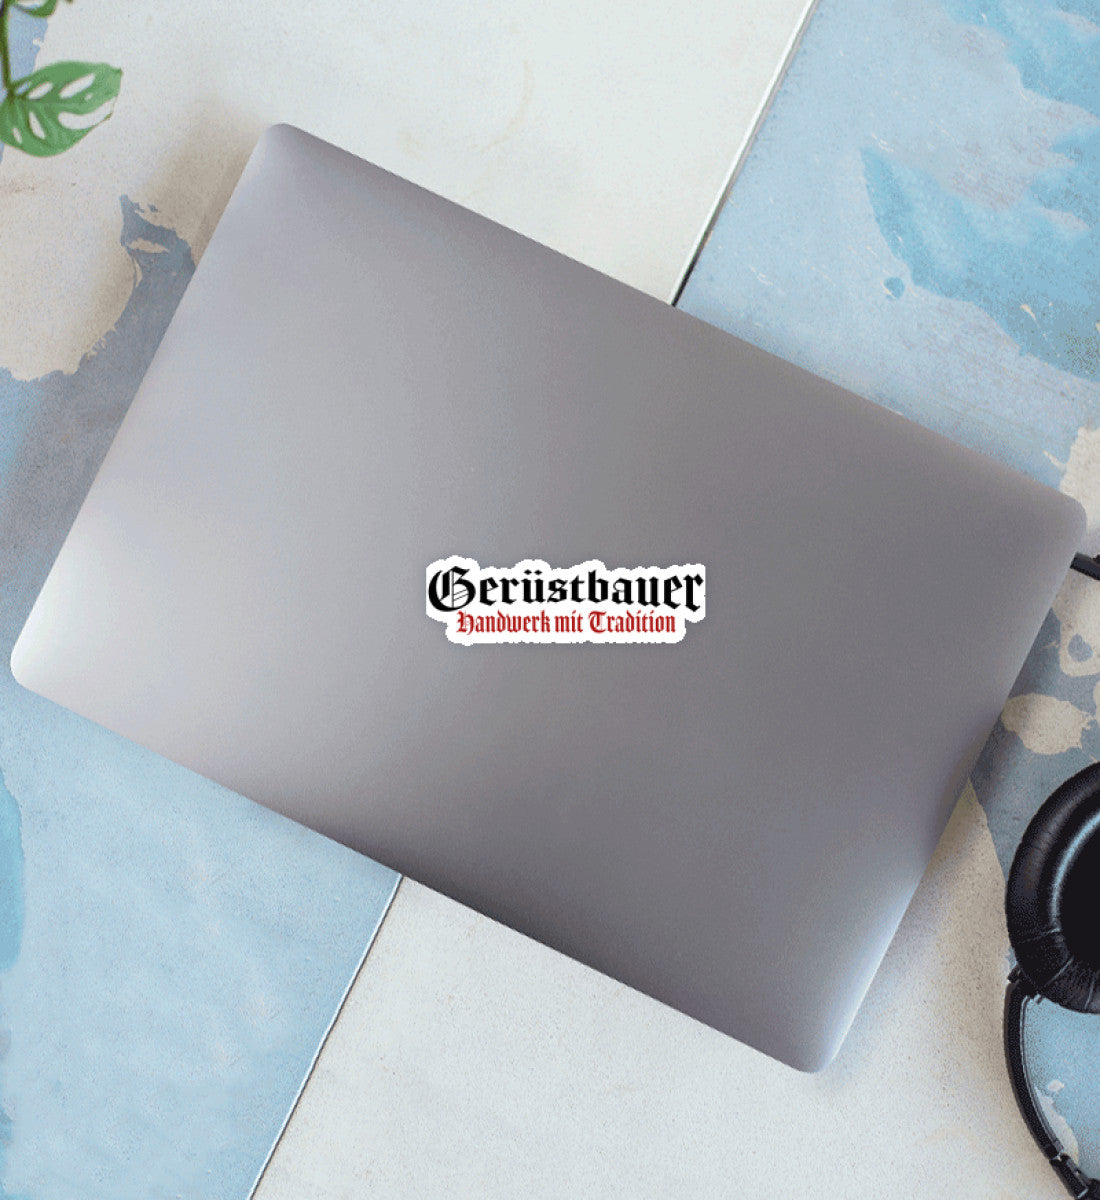 Gerüstbauer Handwerk mit Tradition  - Sticker €4.95 Gerüstbauer - Shop >>